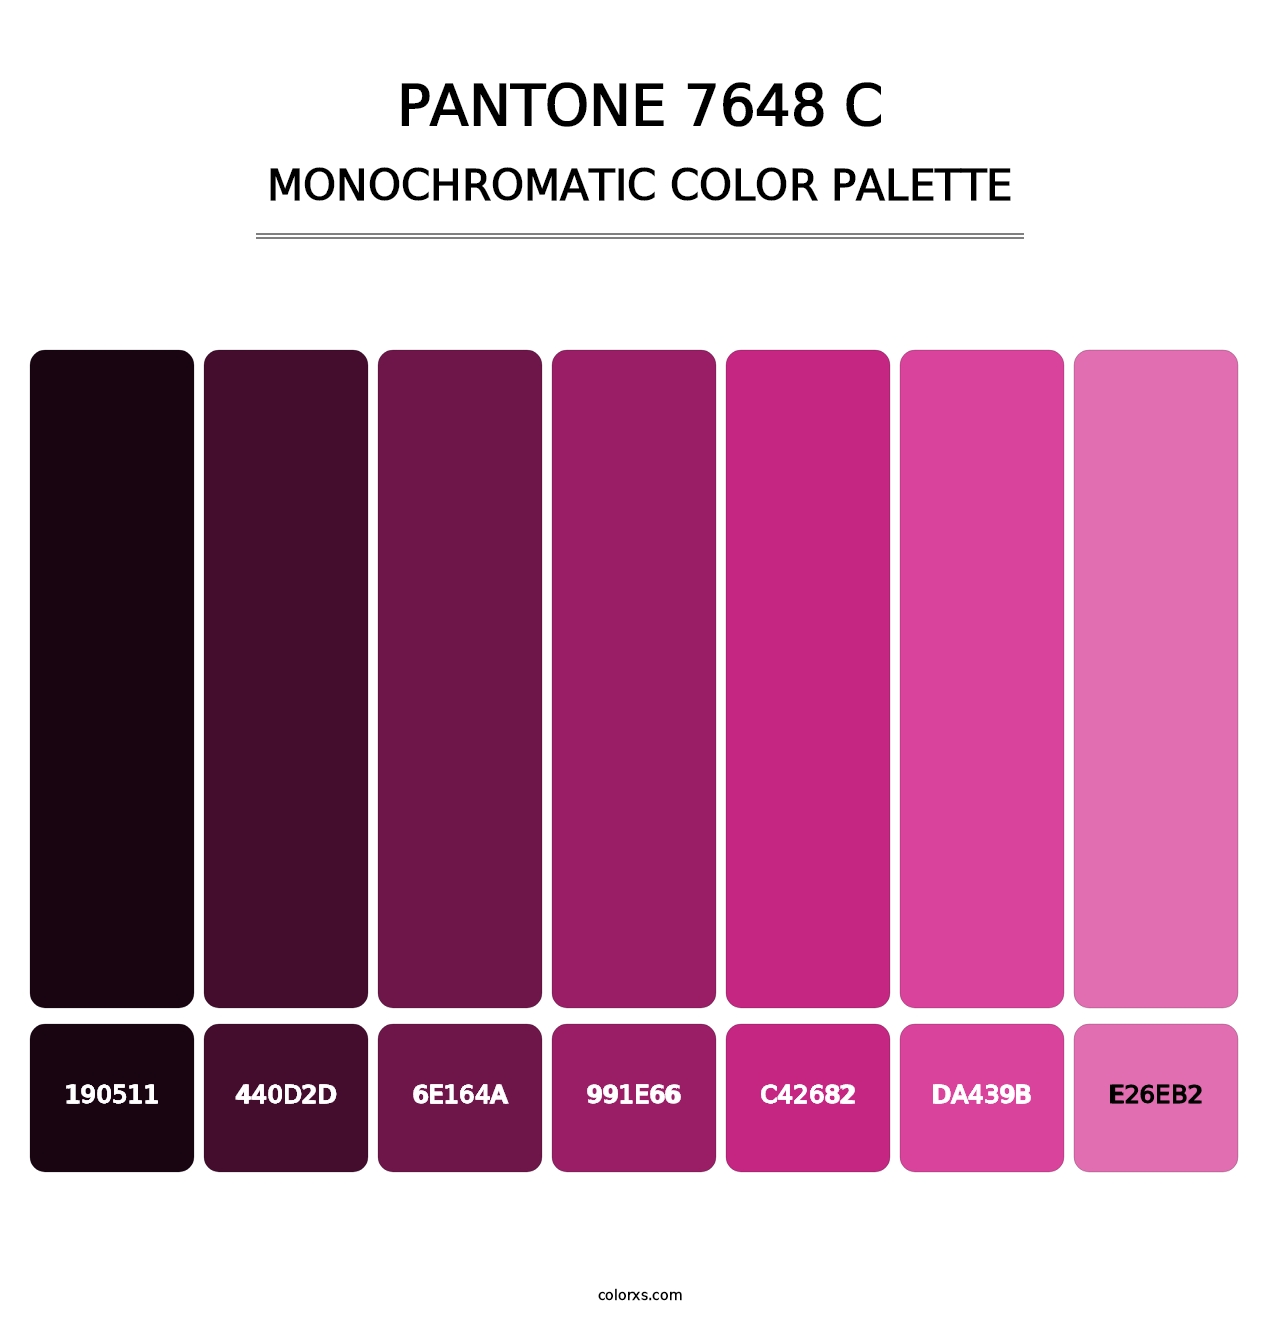 PANTONE 7648 C - Monochromatic Color Palette